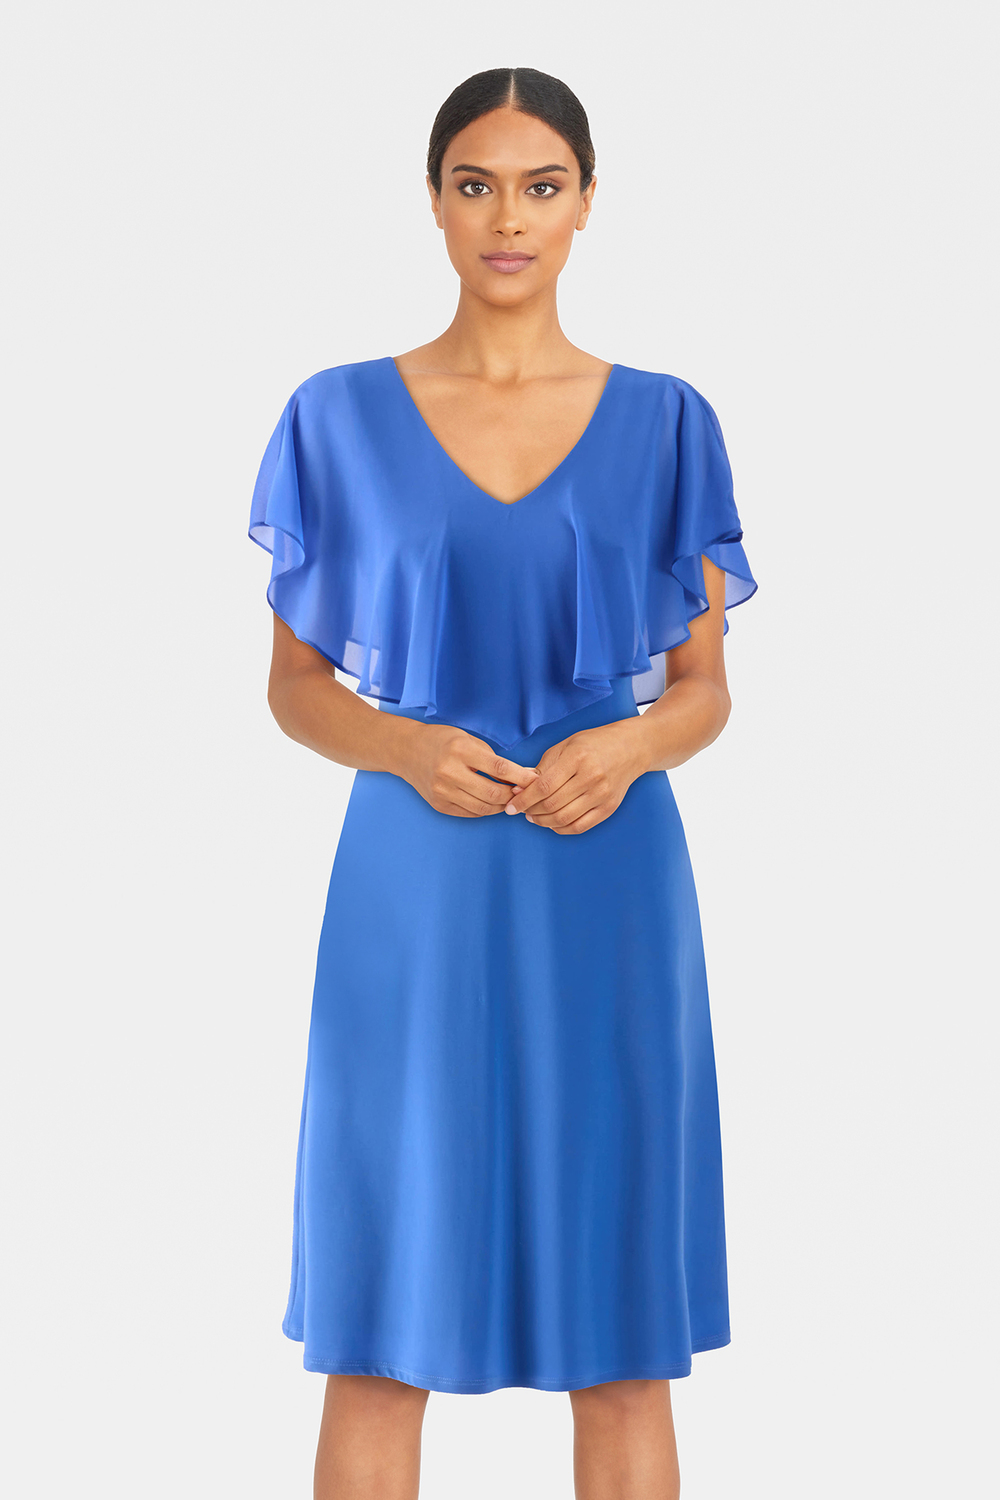 Chiffon Overlay Dress Style 232240. Blue Iris